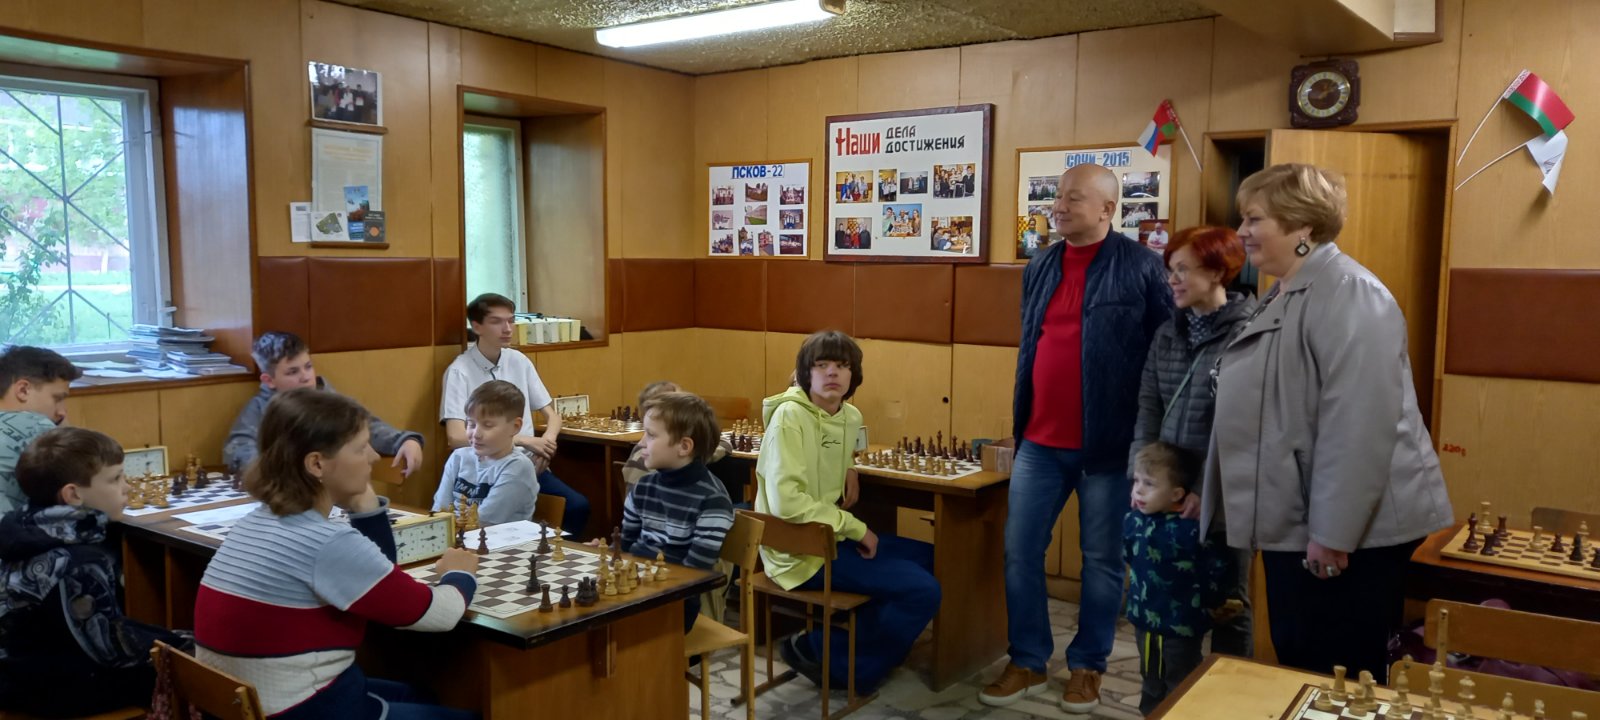 Шахматный турнир для детей Бобруйска проходит  при содействии  адвокатов двух территориальных коллегий